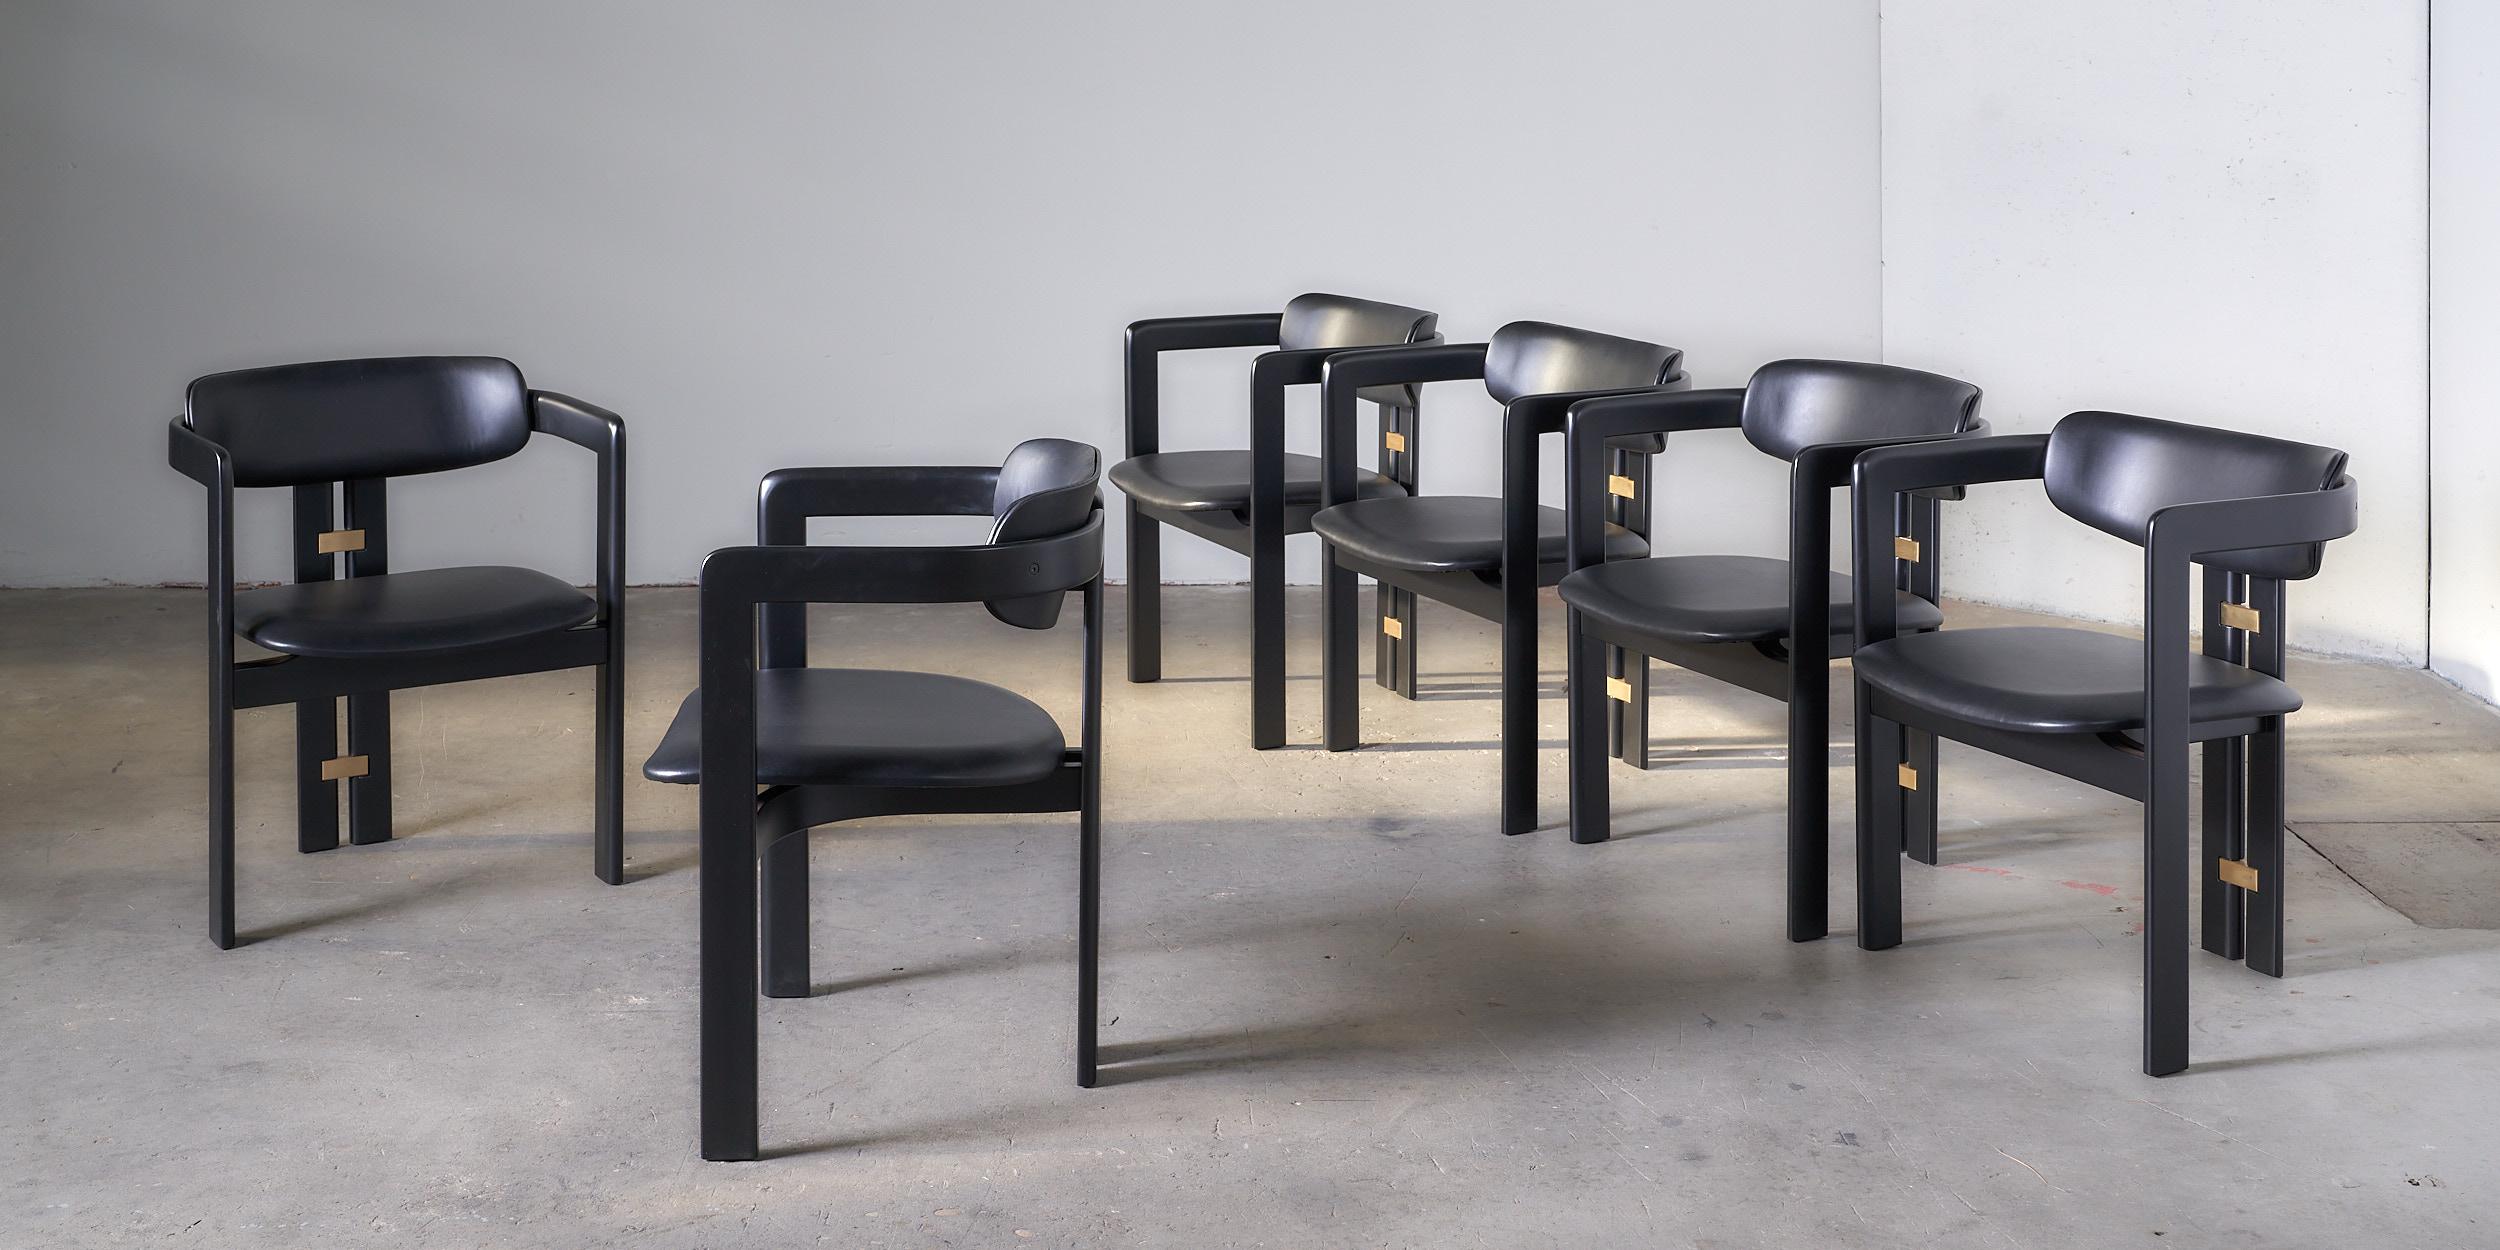 Der Esszimmerstuhl Pamplona von Augusto Savini für Pozzi, Italien, 1965, ist ein wunderschönes Möbelstück, das Komfort, Stil und Funktionalität auf harmonische Weise vereint. Dieser Stuhl wurde von dem berühmten italienischen Designer Augusto Savini